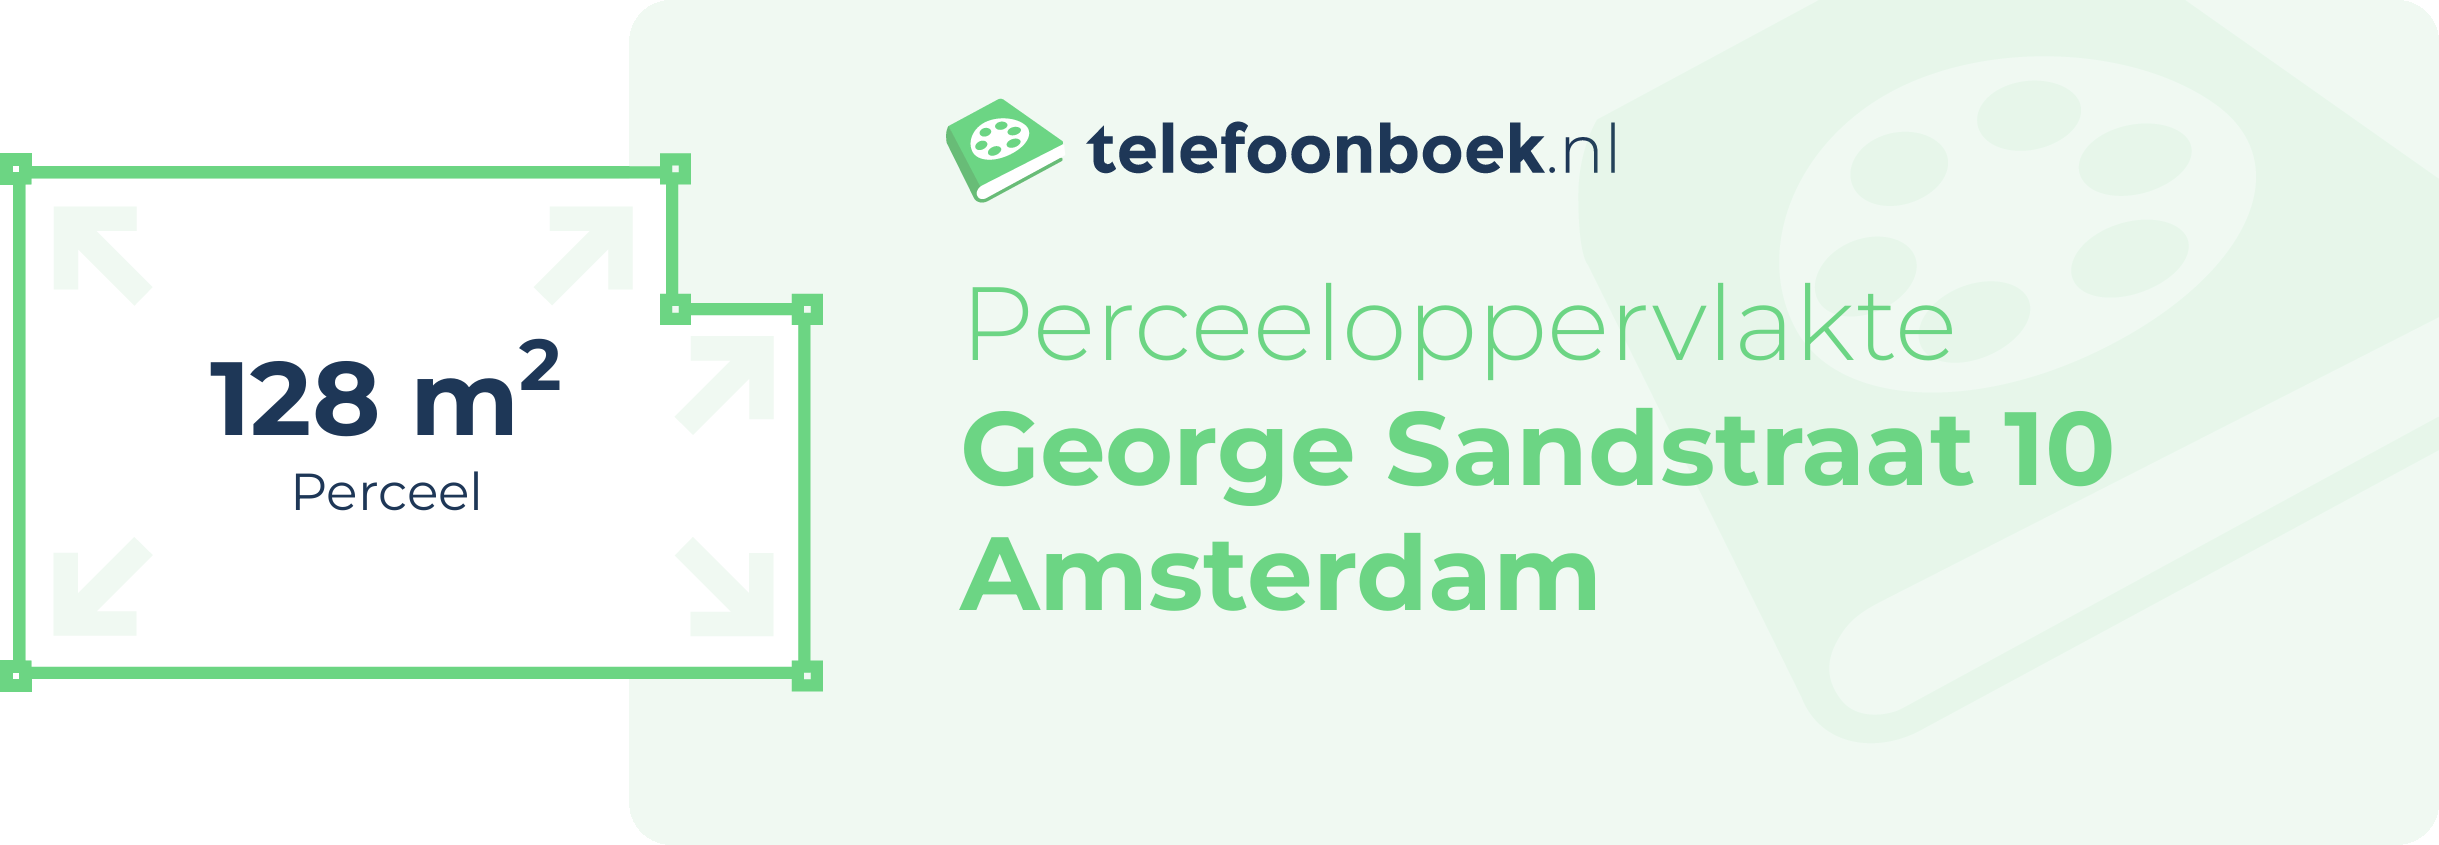 Perceeloppervlakte George Sandstraat 10 Amsterdam